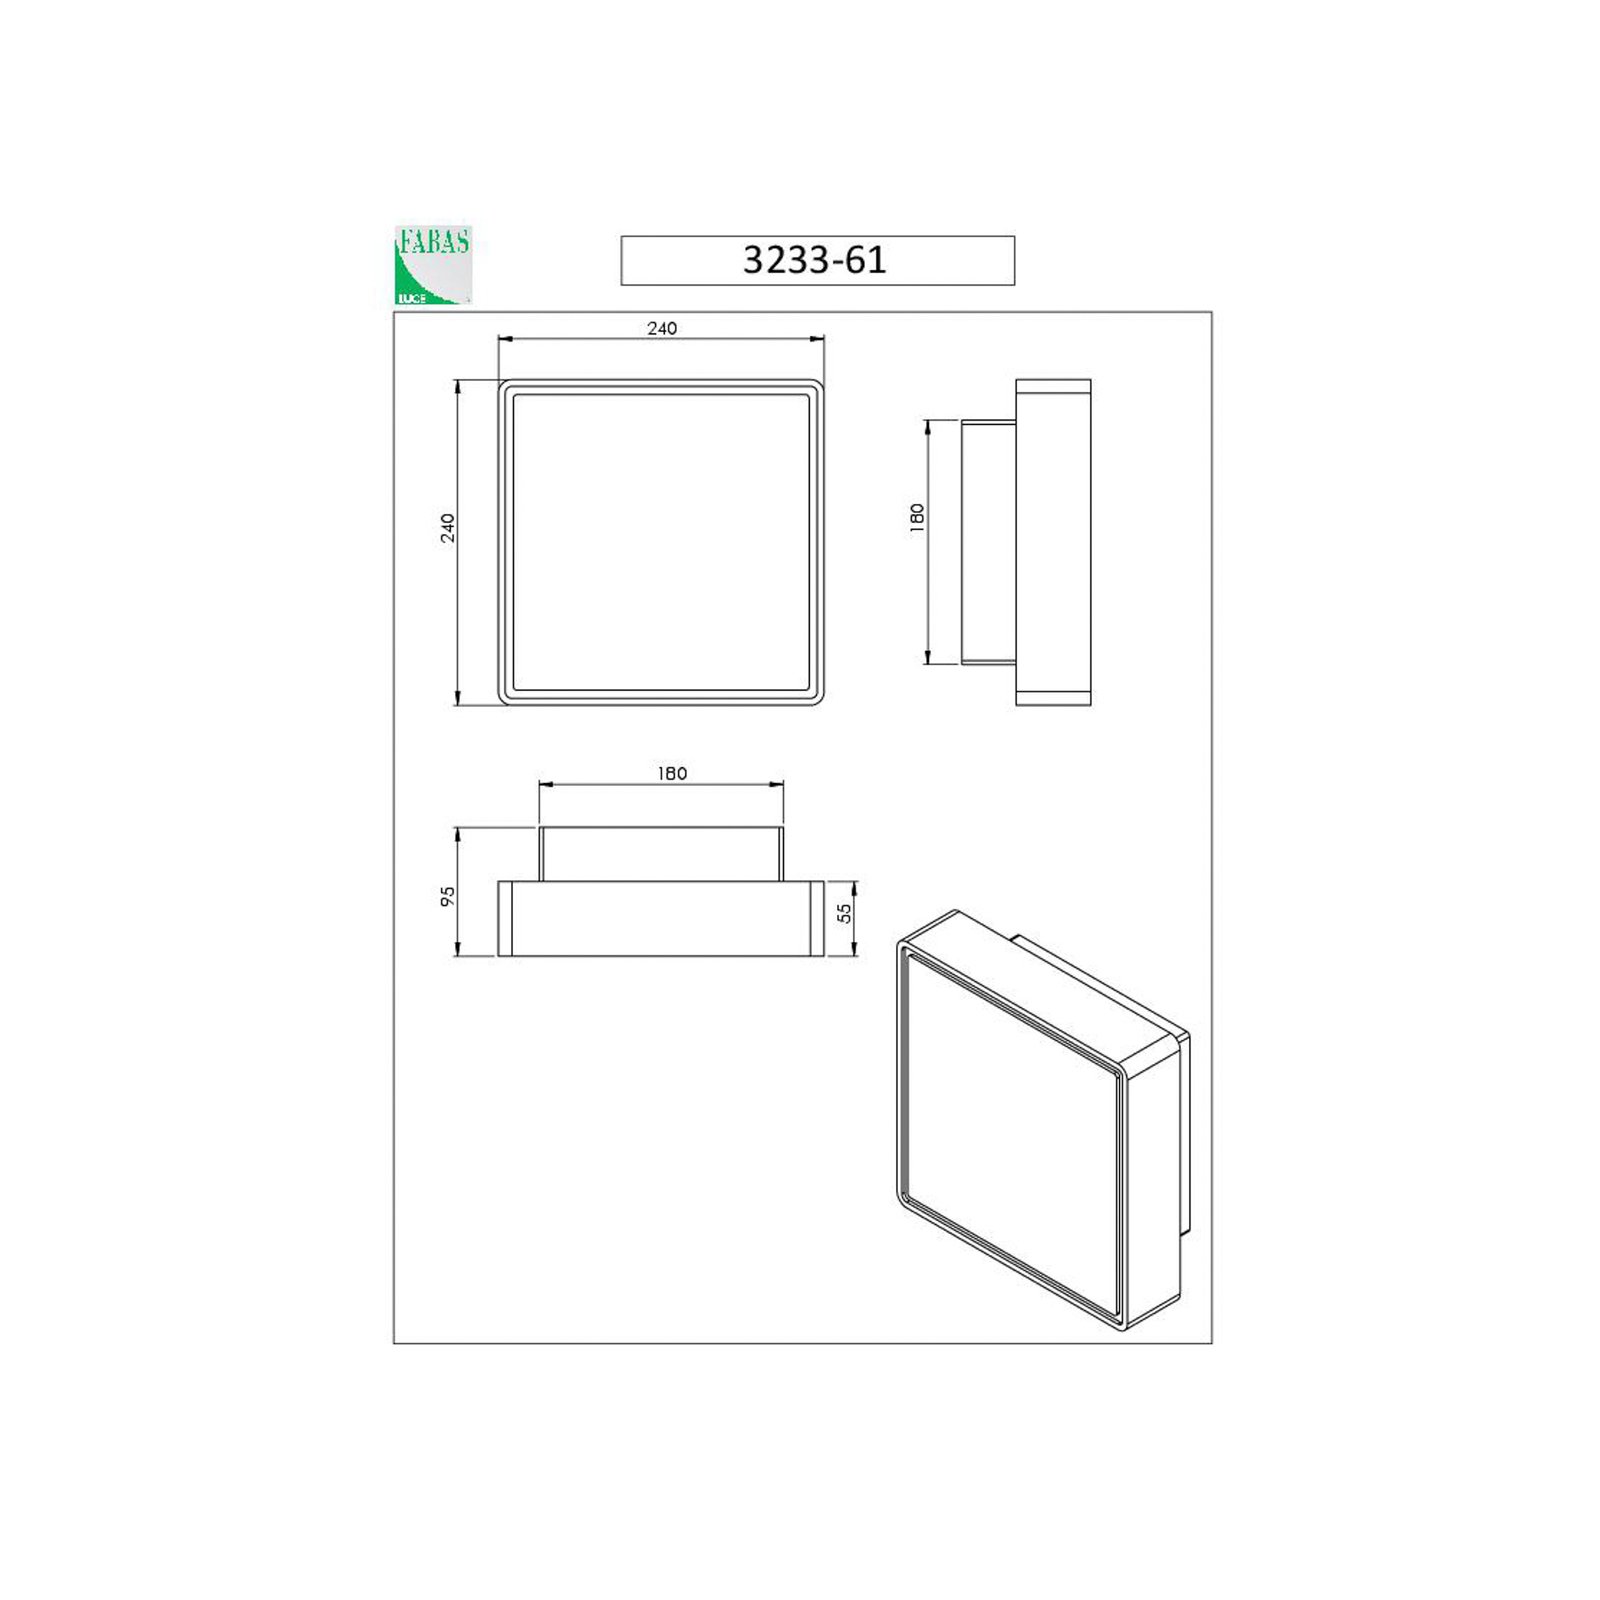 Aplique de pared Oban, 24 cm x 24 cm, 1 x E27, blanco, IP65